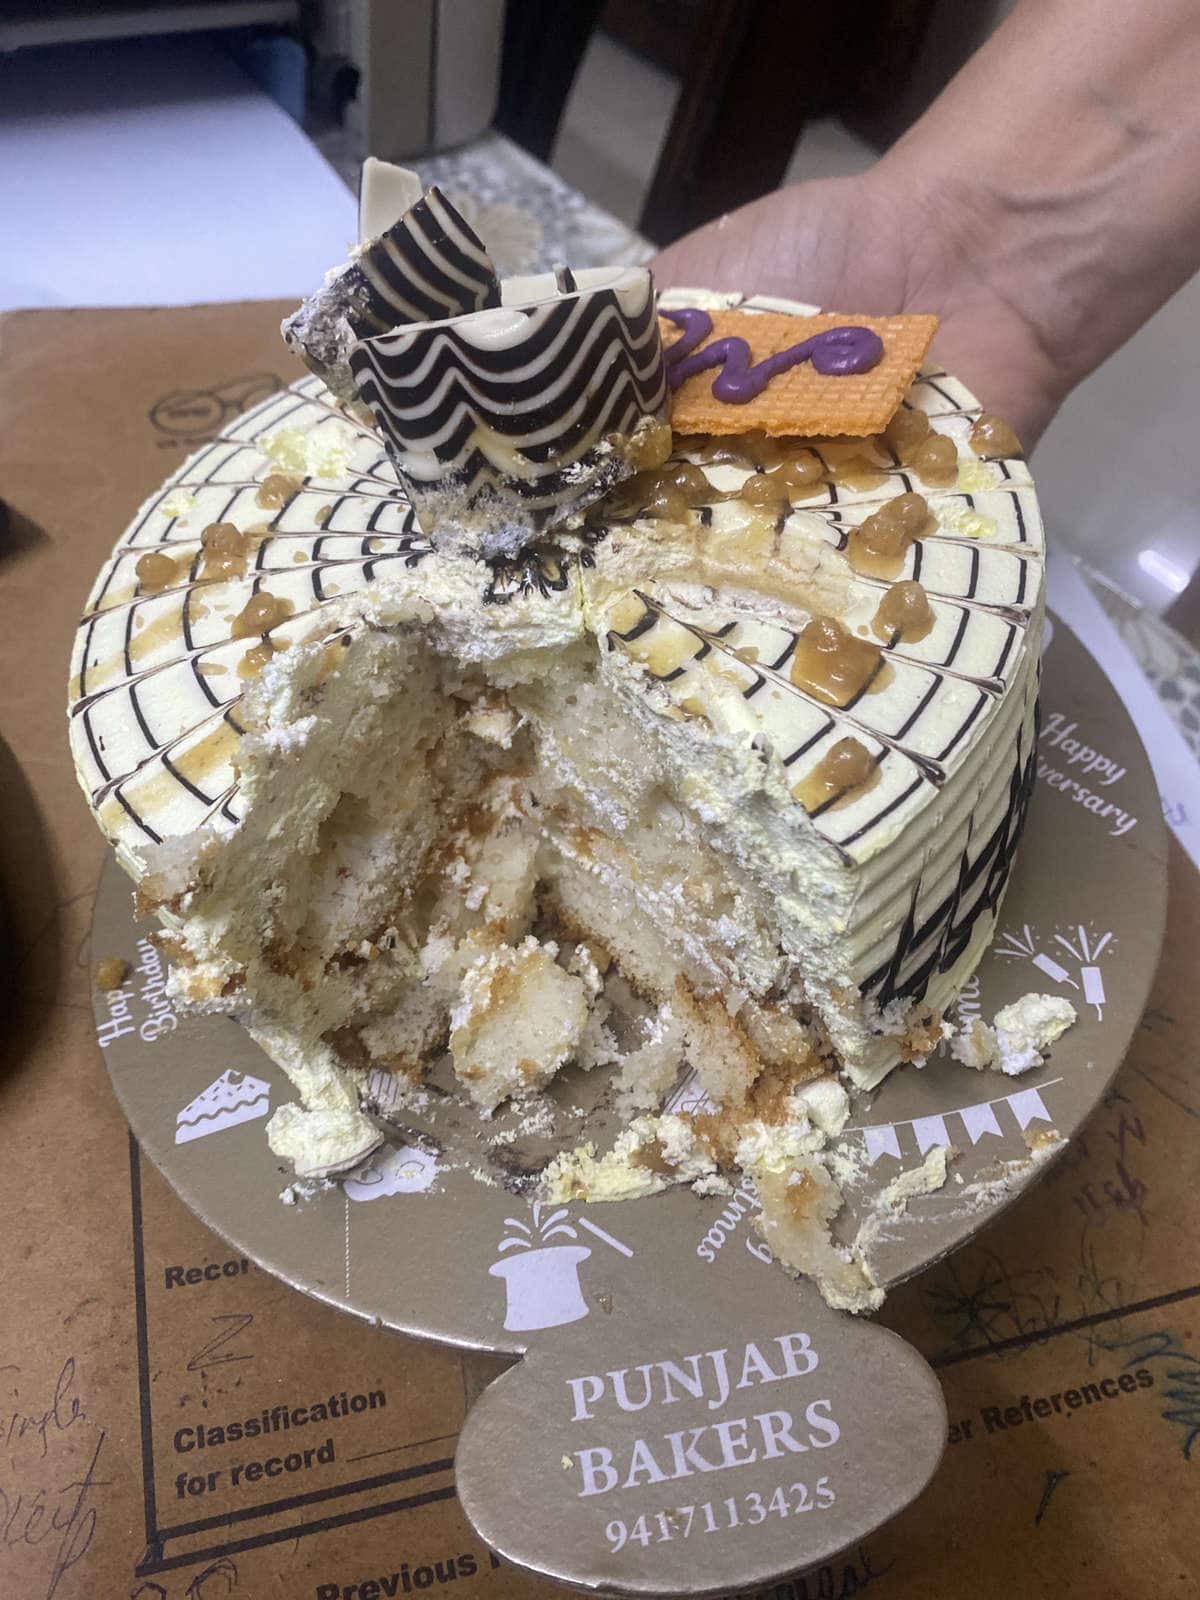 Parkash Bakery - A Complete Food Store, Jalandhar, Punjab, Online Cake  Delivery Jalandhar, Punjab, India Breads, Cakes in Jalandhar, Pastries,  Cookies, Online Shopping Jalandhar, Online Cake Delivery Jalandhar